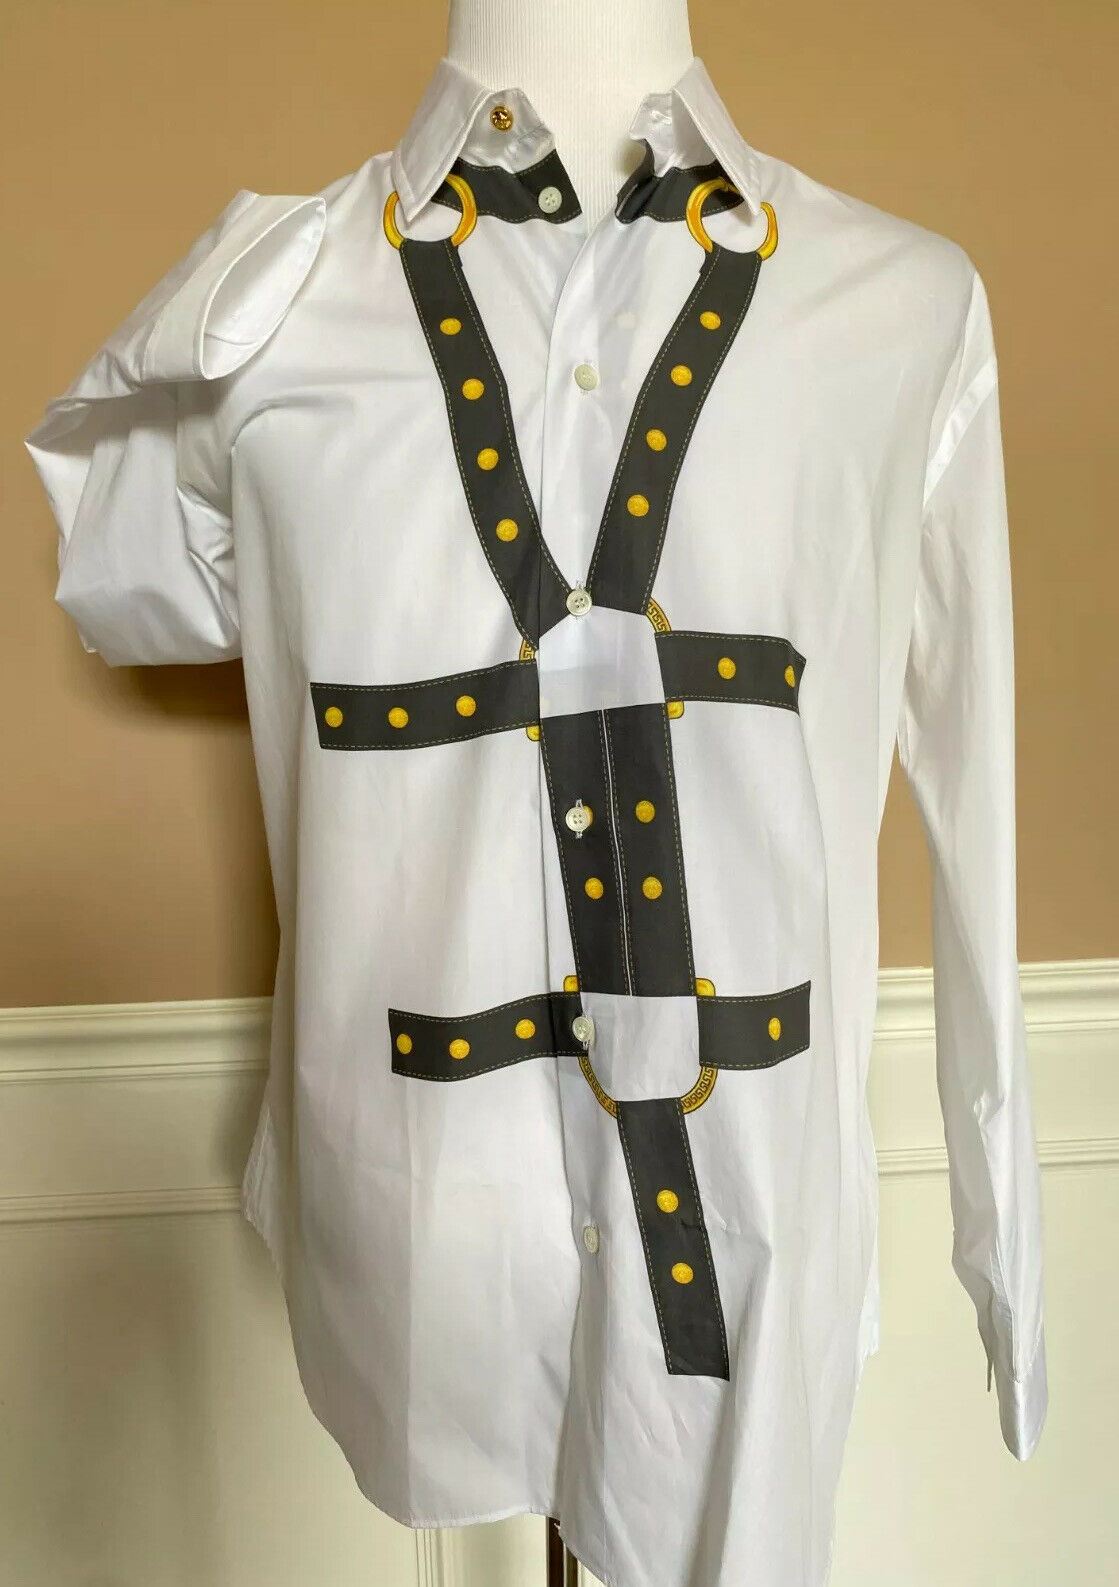 NWT $650 Versace Белая классическая рубашка с графическим принтом, размер 40 A83678 Италия